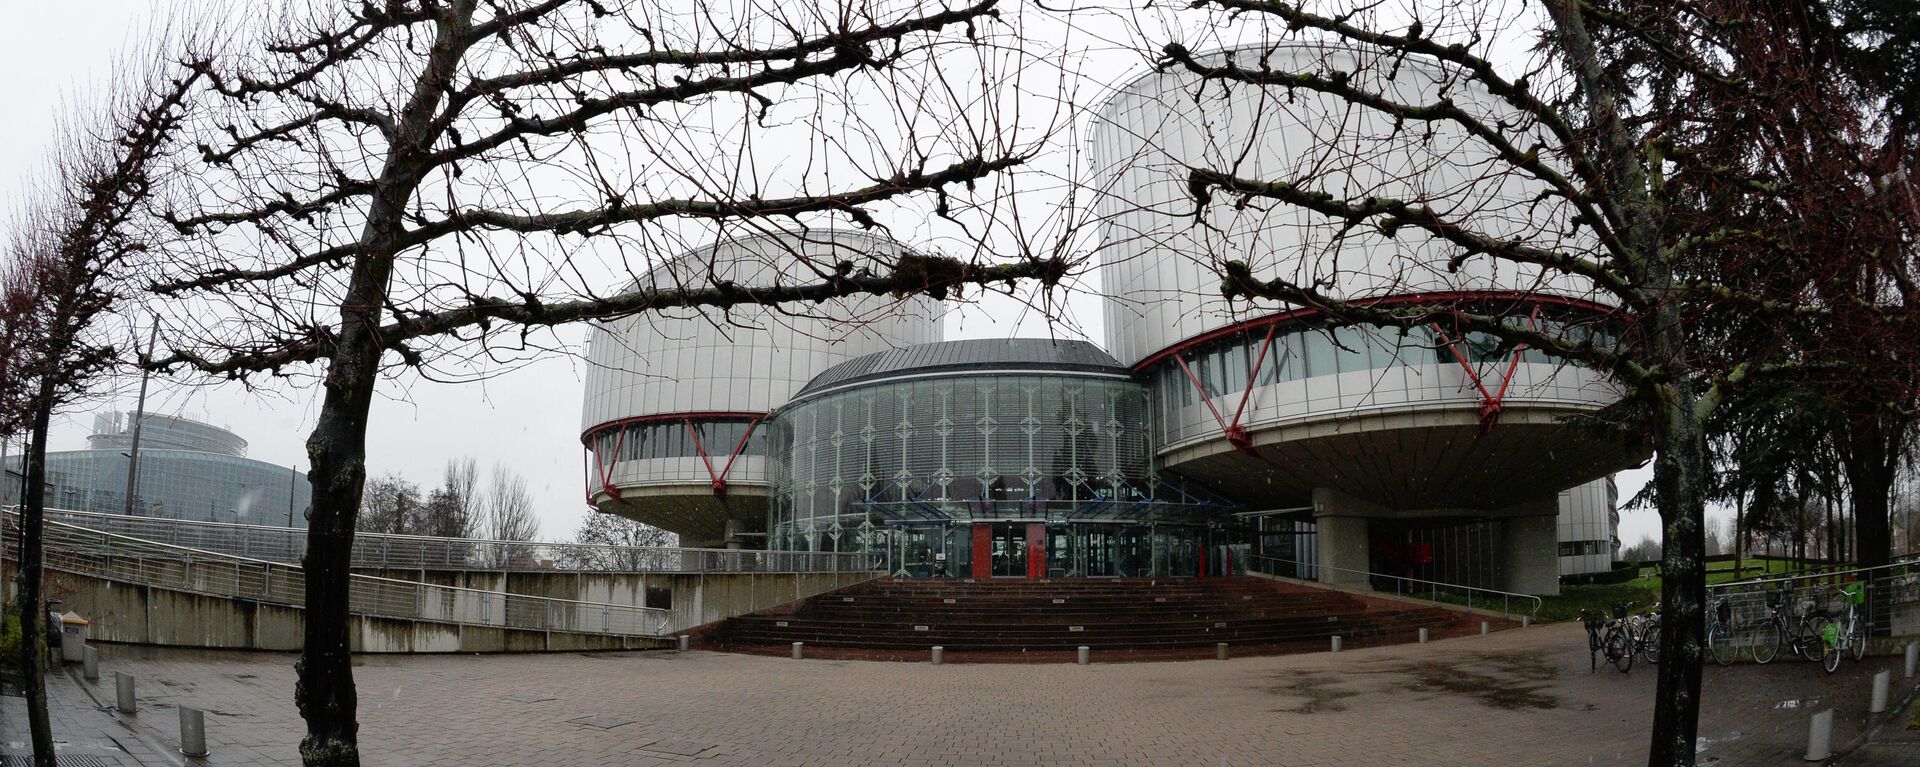 Дворец прав человека (1995 г.) в Страсбурге, в здании которого расположен Европейский суд по правам человека - Sputnik Латвия, 1920, 12.11.2021